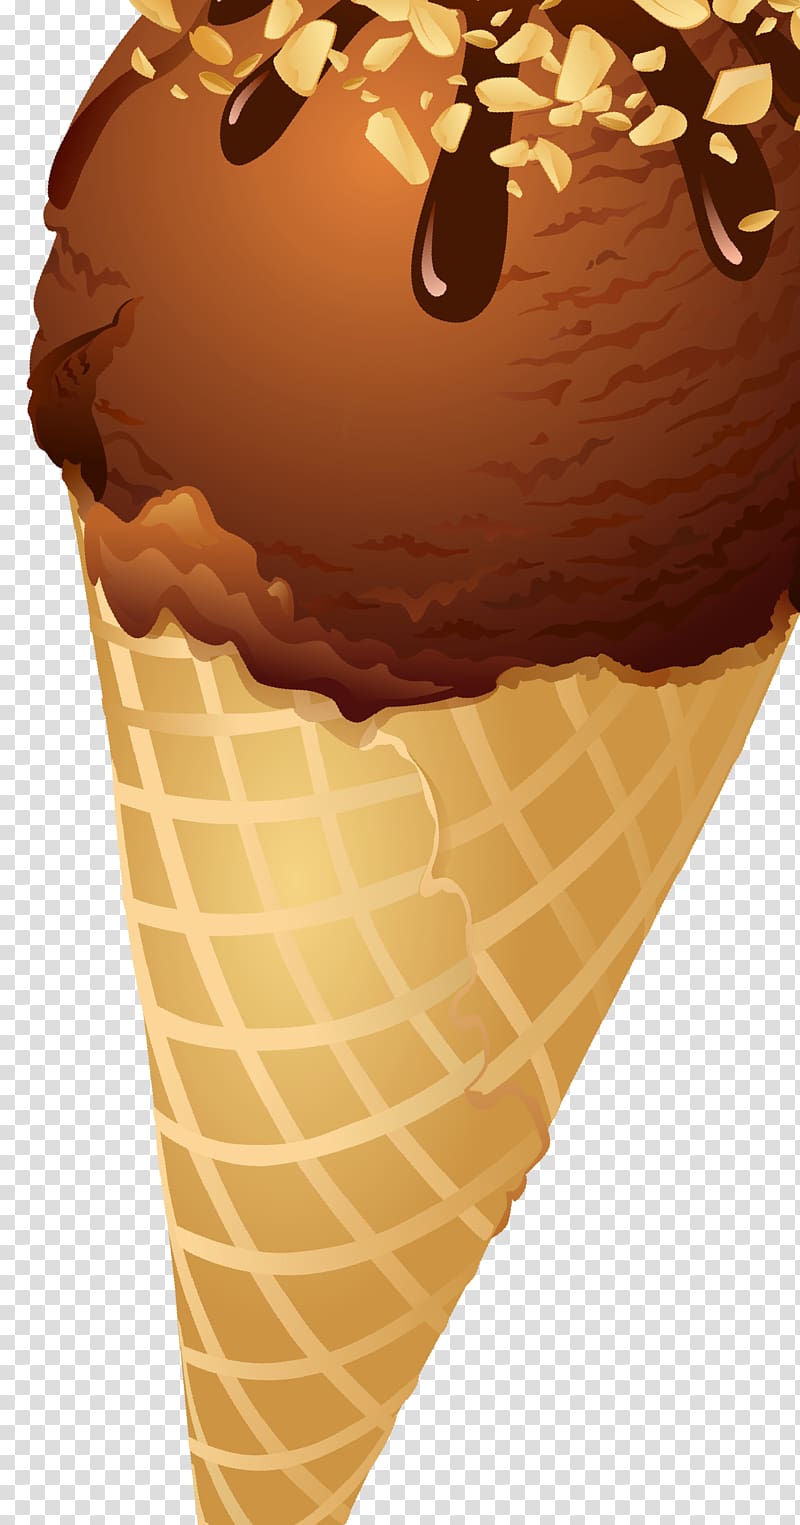 Chocolate ice cream Ice Cream Cones Frozen dessert, ICECREAM transparent background PNG clipart